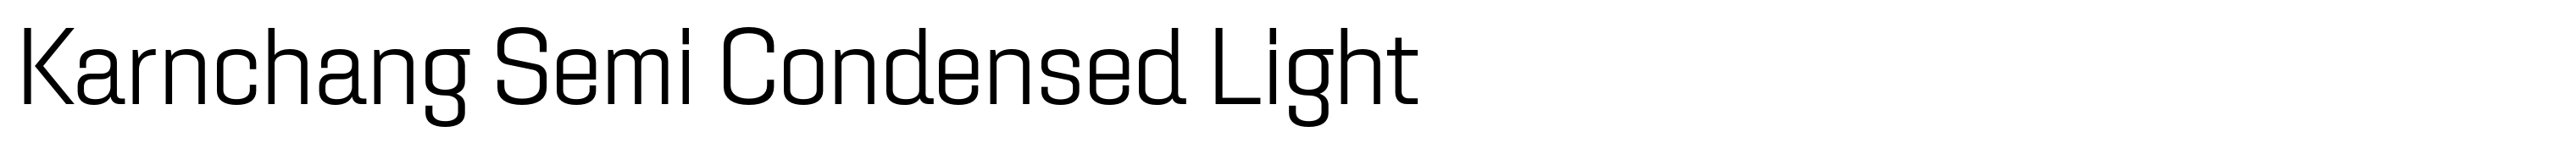 Karnchang Semi Condensed Light